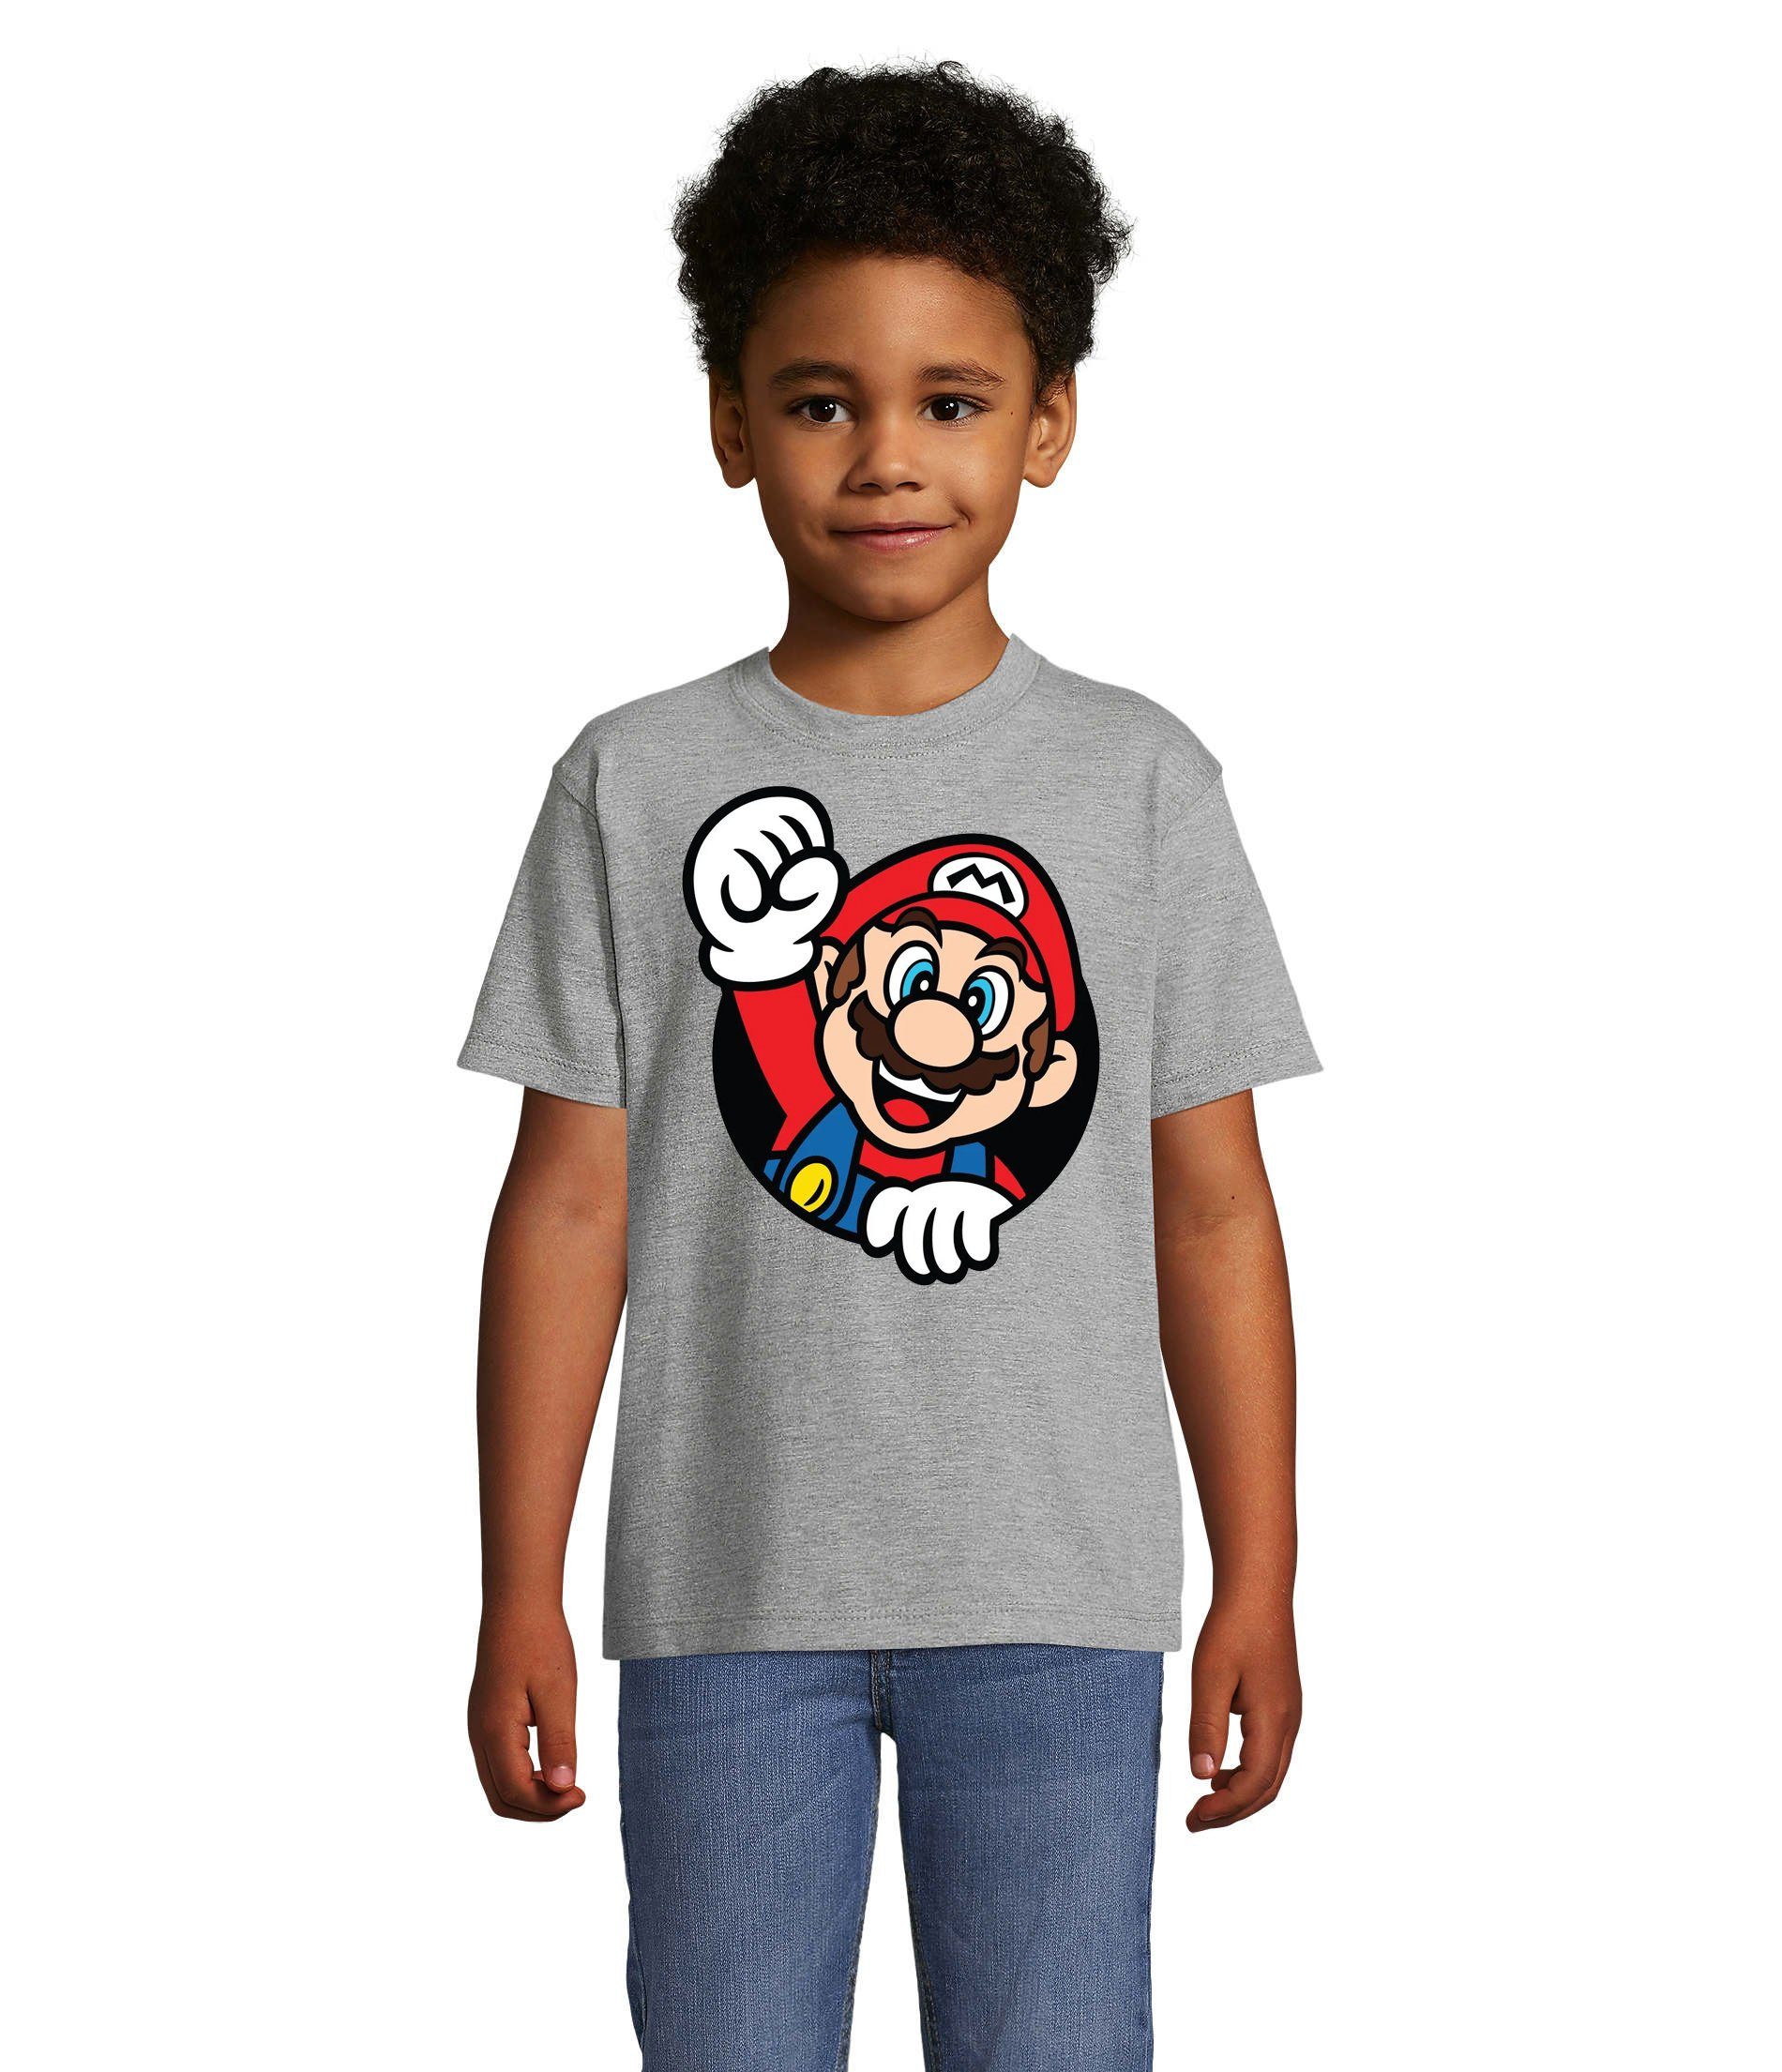 Blondie & Brownie T-Shirt Kinder Konsole Konsole Spiel Nerd Faust Gaming Grau Nintendo Super Mario